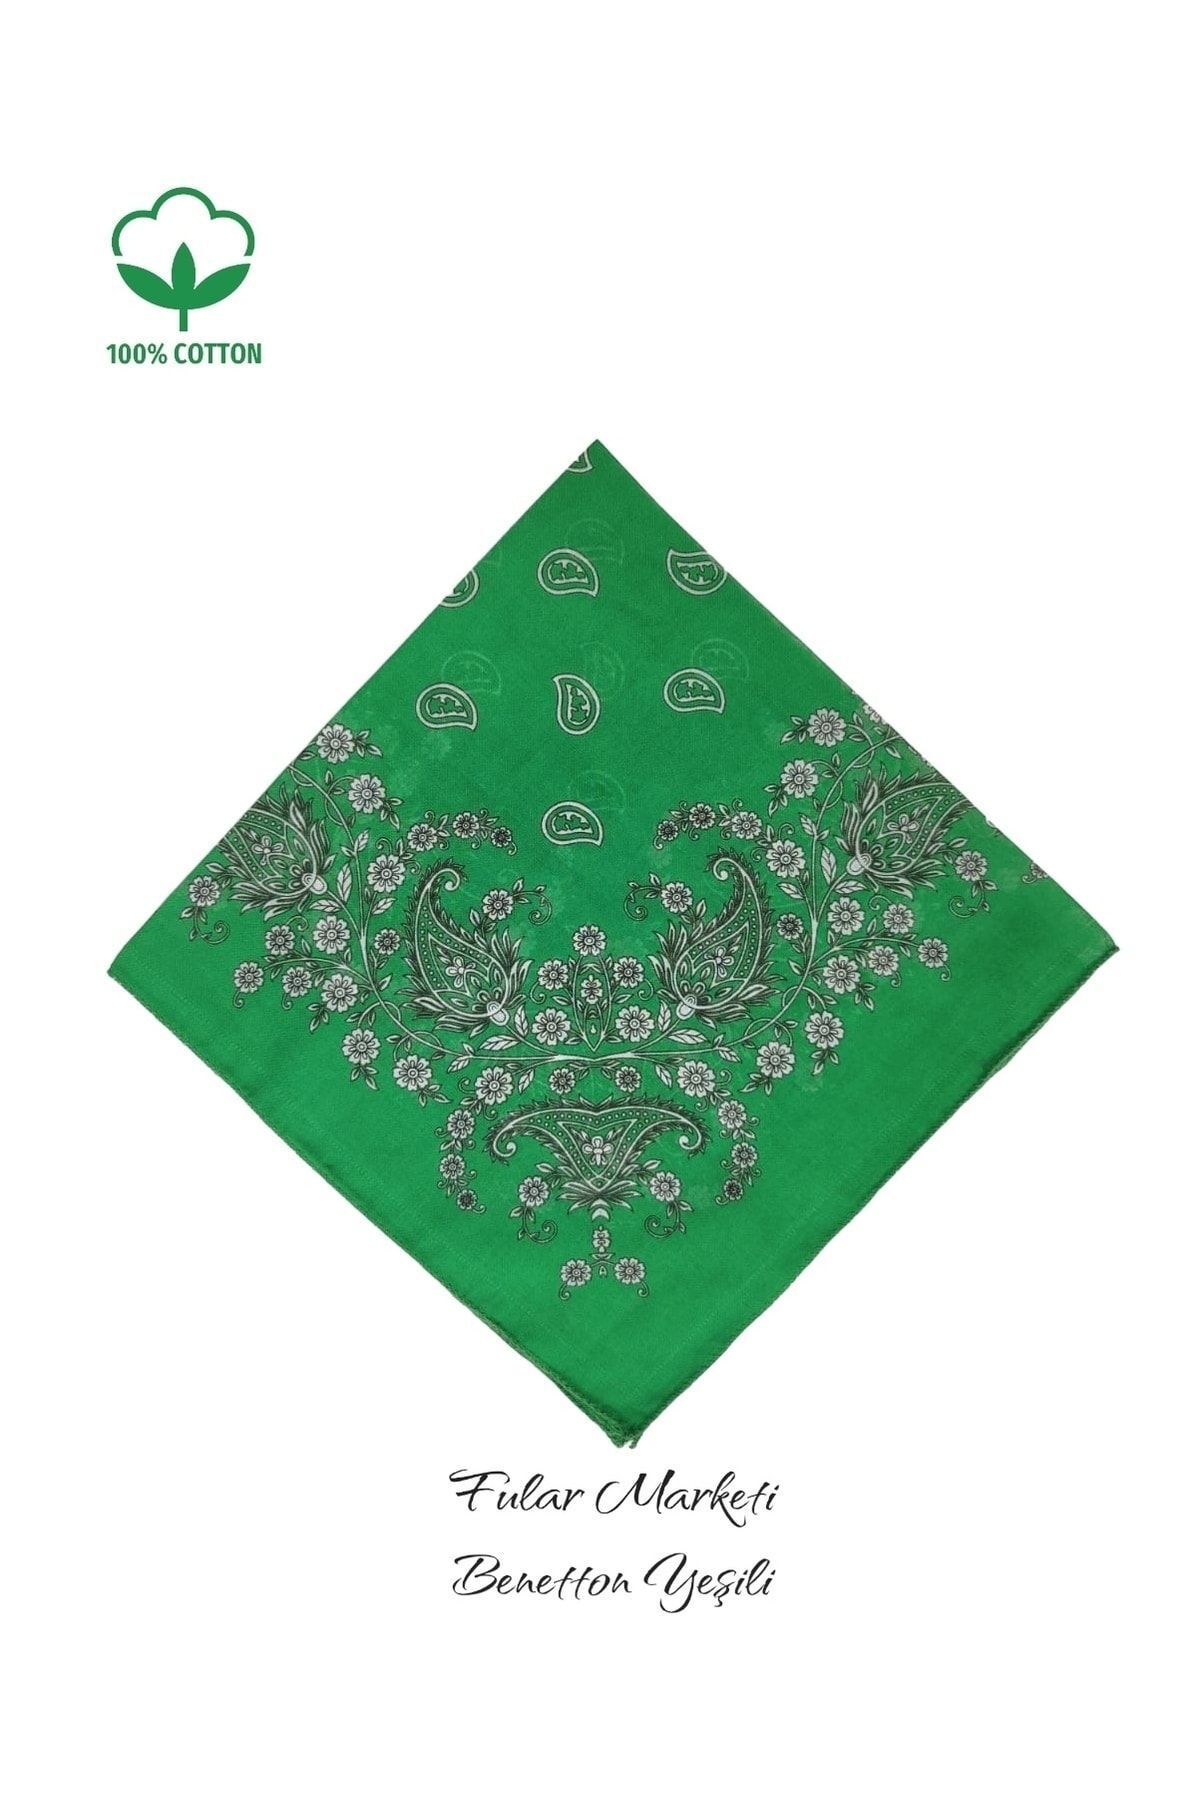 Fular Marketi %100 Pamuklu Crush Desen Benetton Yeşili Sepete 5 Adet Ekle 4 Adet Öde Kampanyalı 1 Adet Fiyatıdır